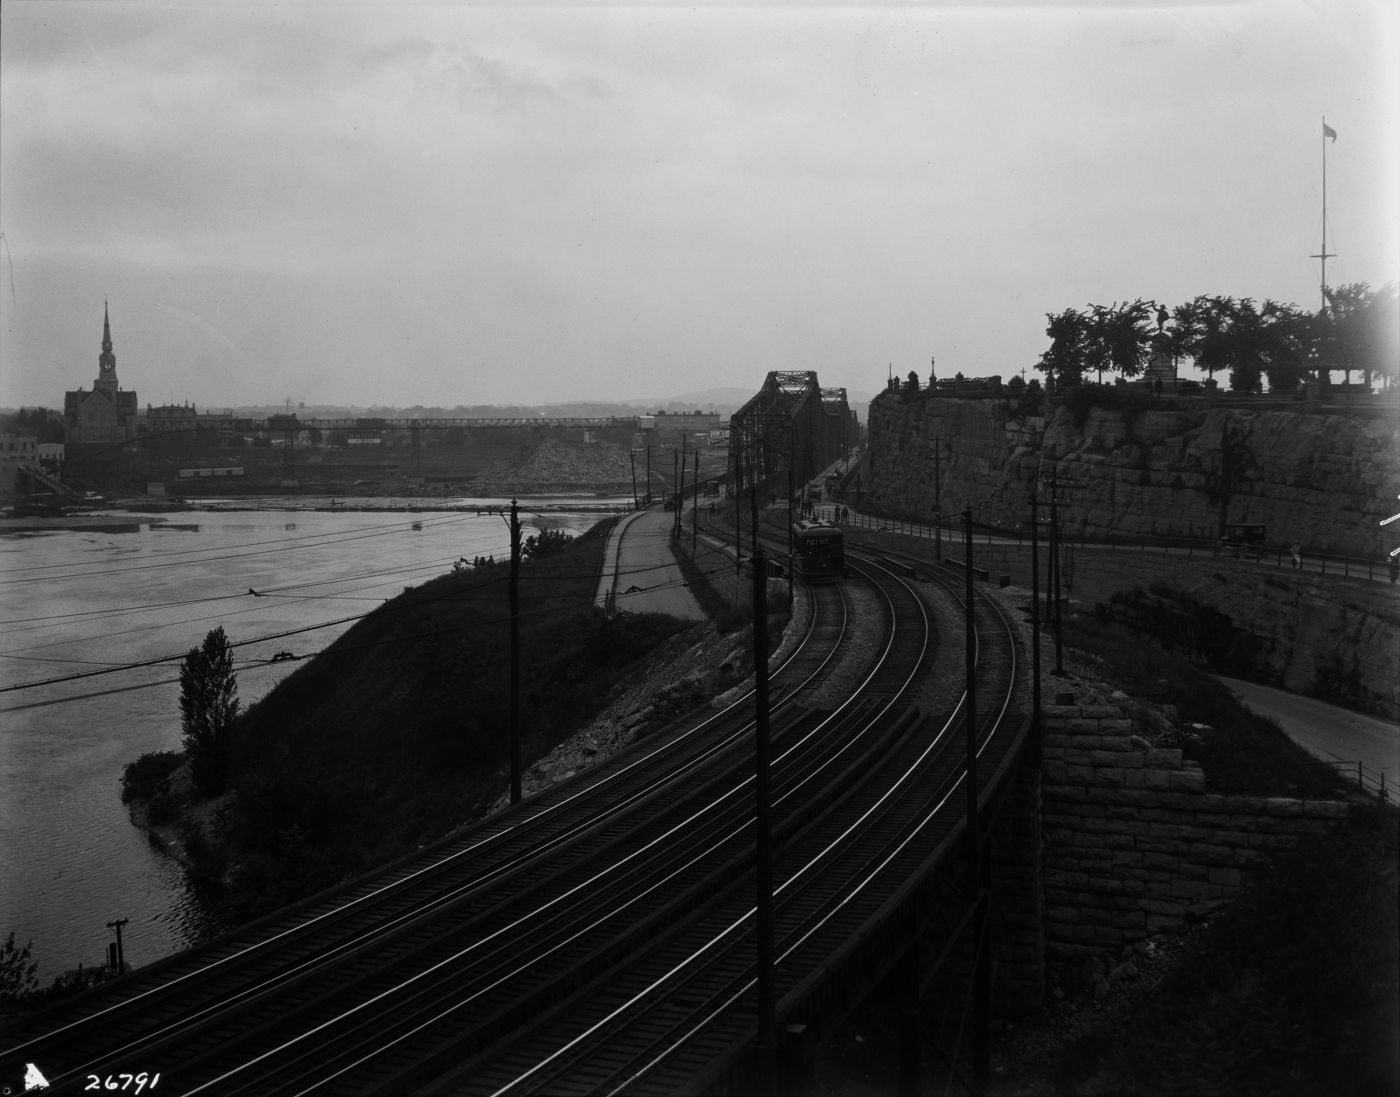 Photographie en noir et blanc d’un paysage riverain. À l’avant-plan, trois voies de chemin de fer mènent à un pont de fer. De l’autre côté du cours d’eau, un paysage industriel dominé par une église imposante.